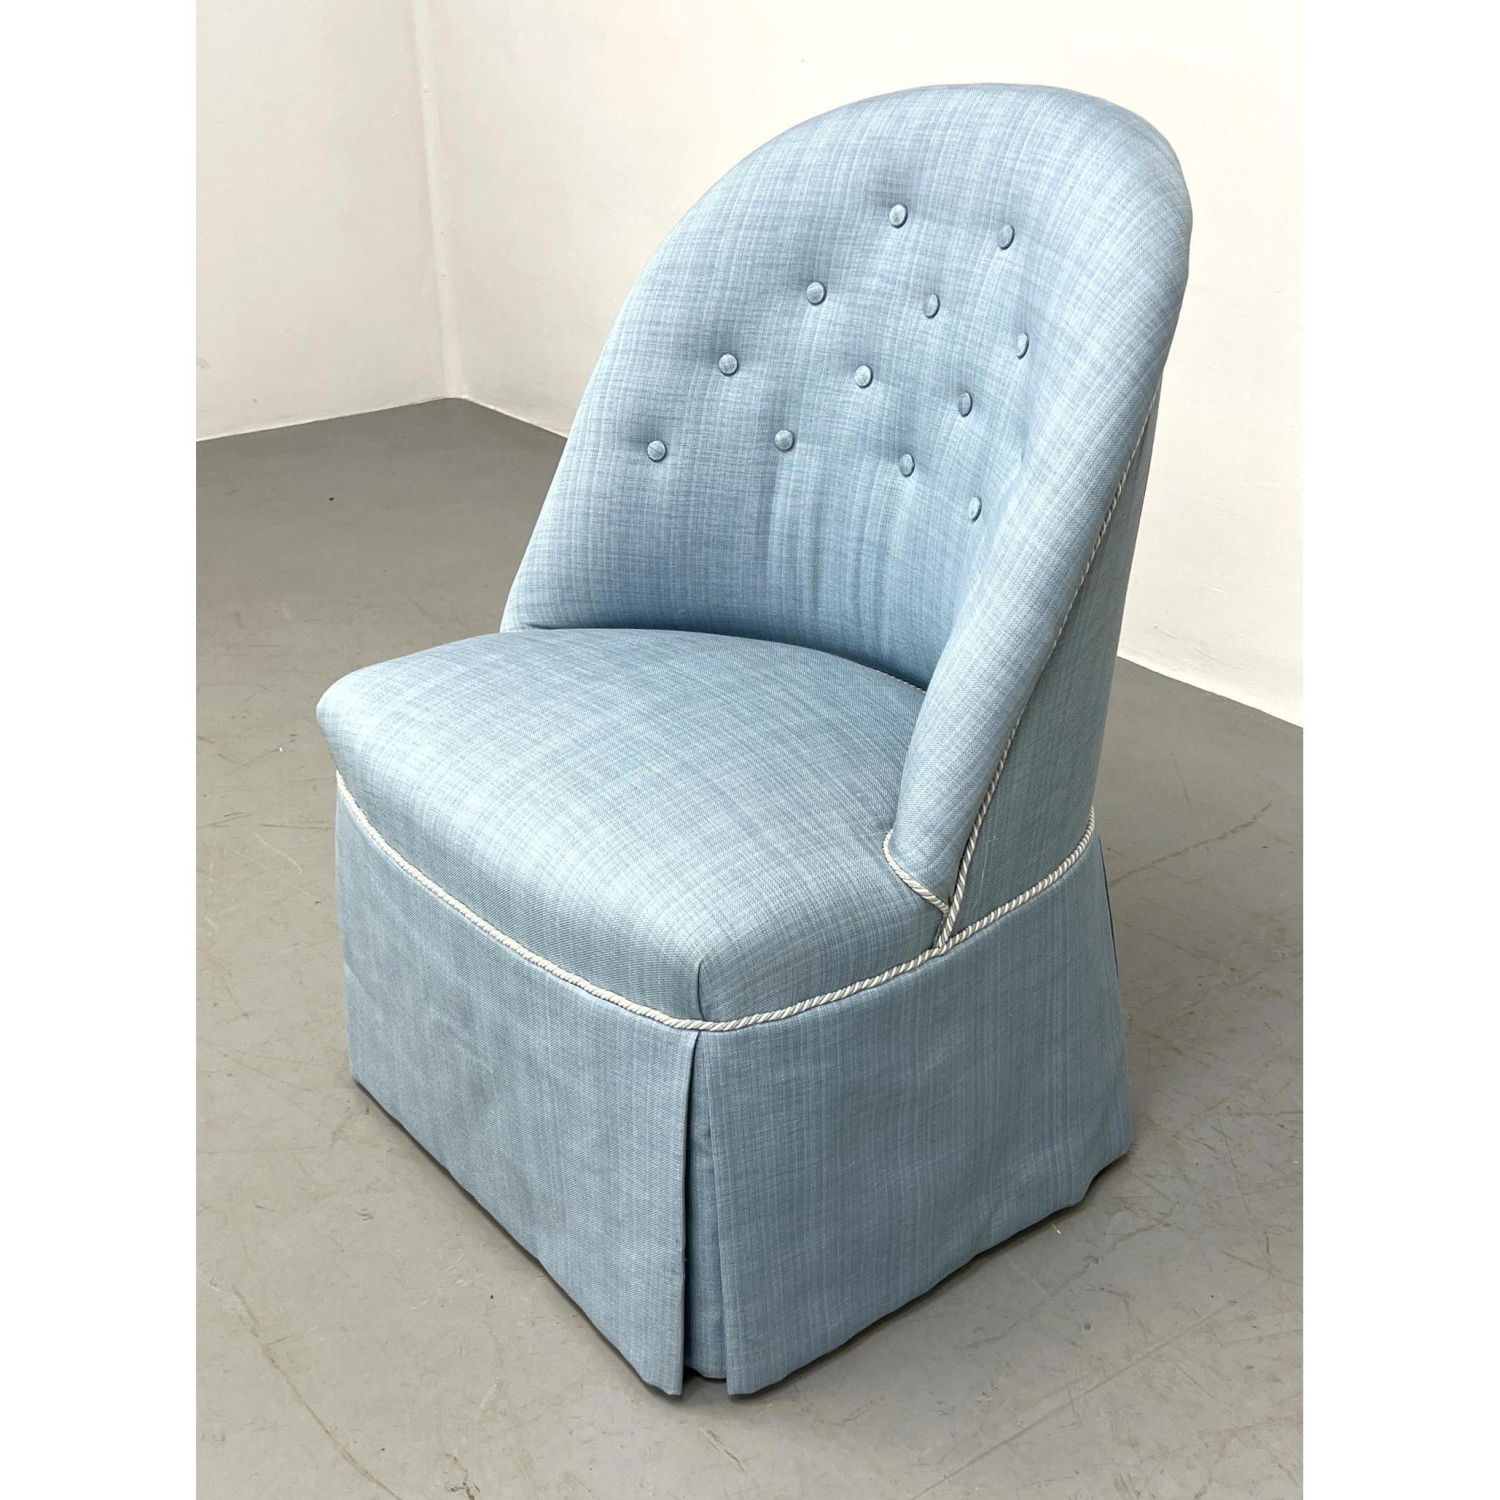 Light blue Linen upholstered boudoir